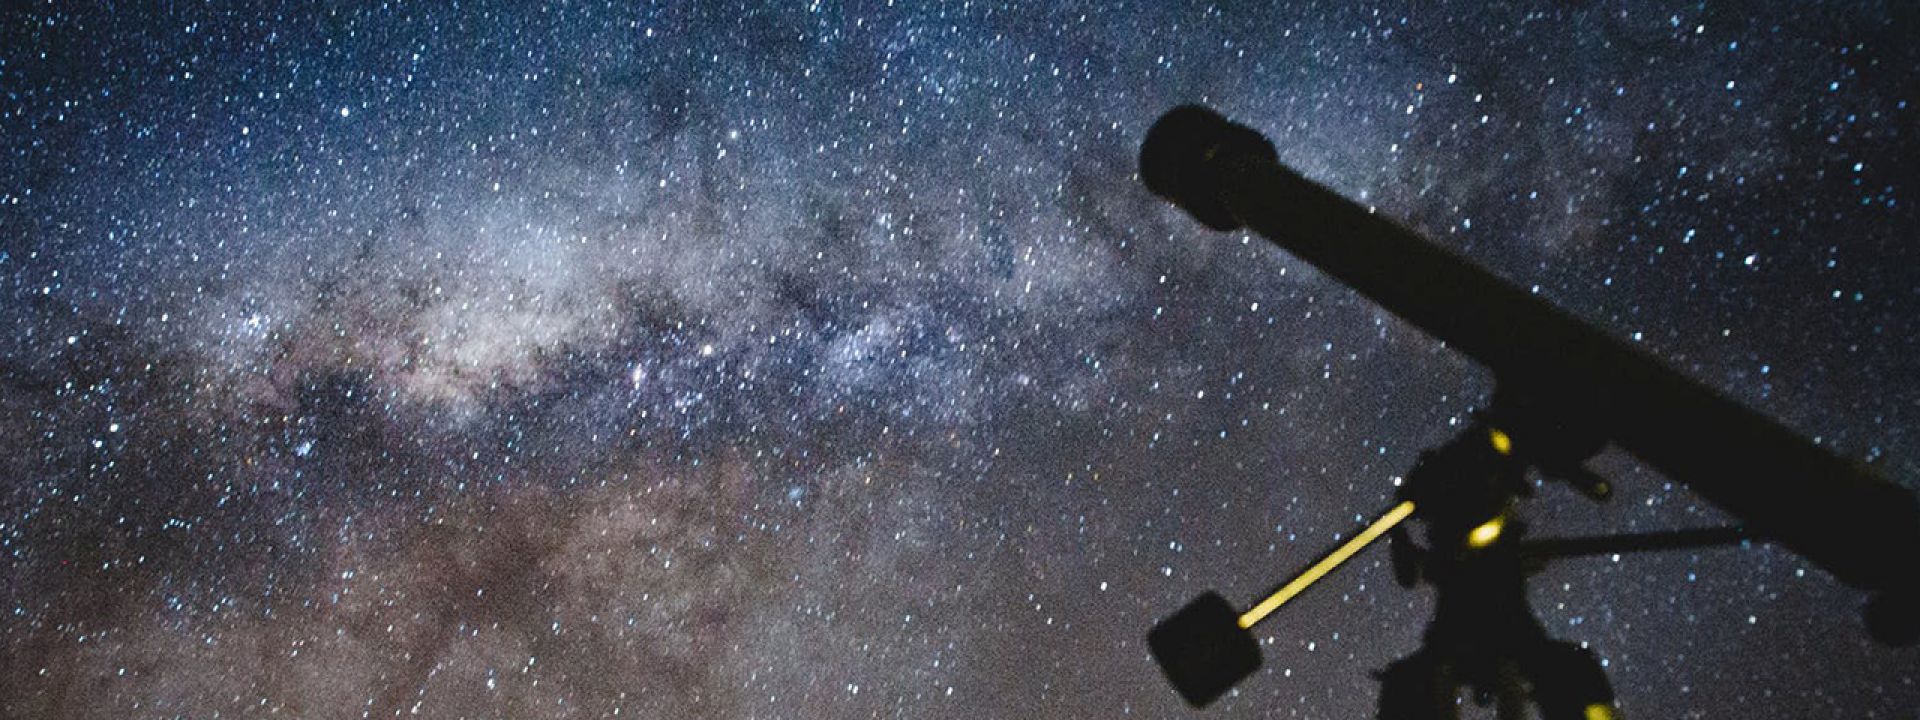 Φωτογραφία που απεικονίζει τα αστέρια και ένα τηλεσκόπιο